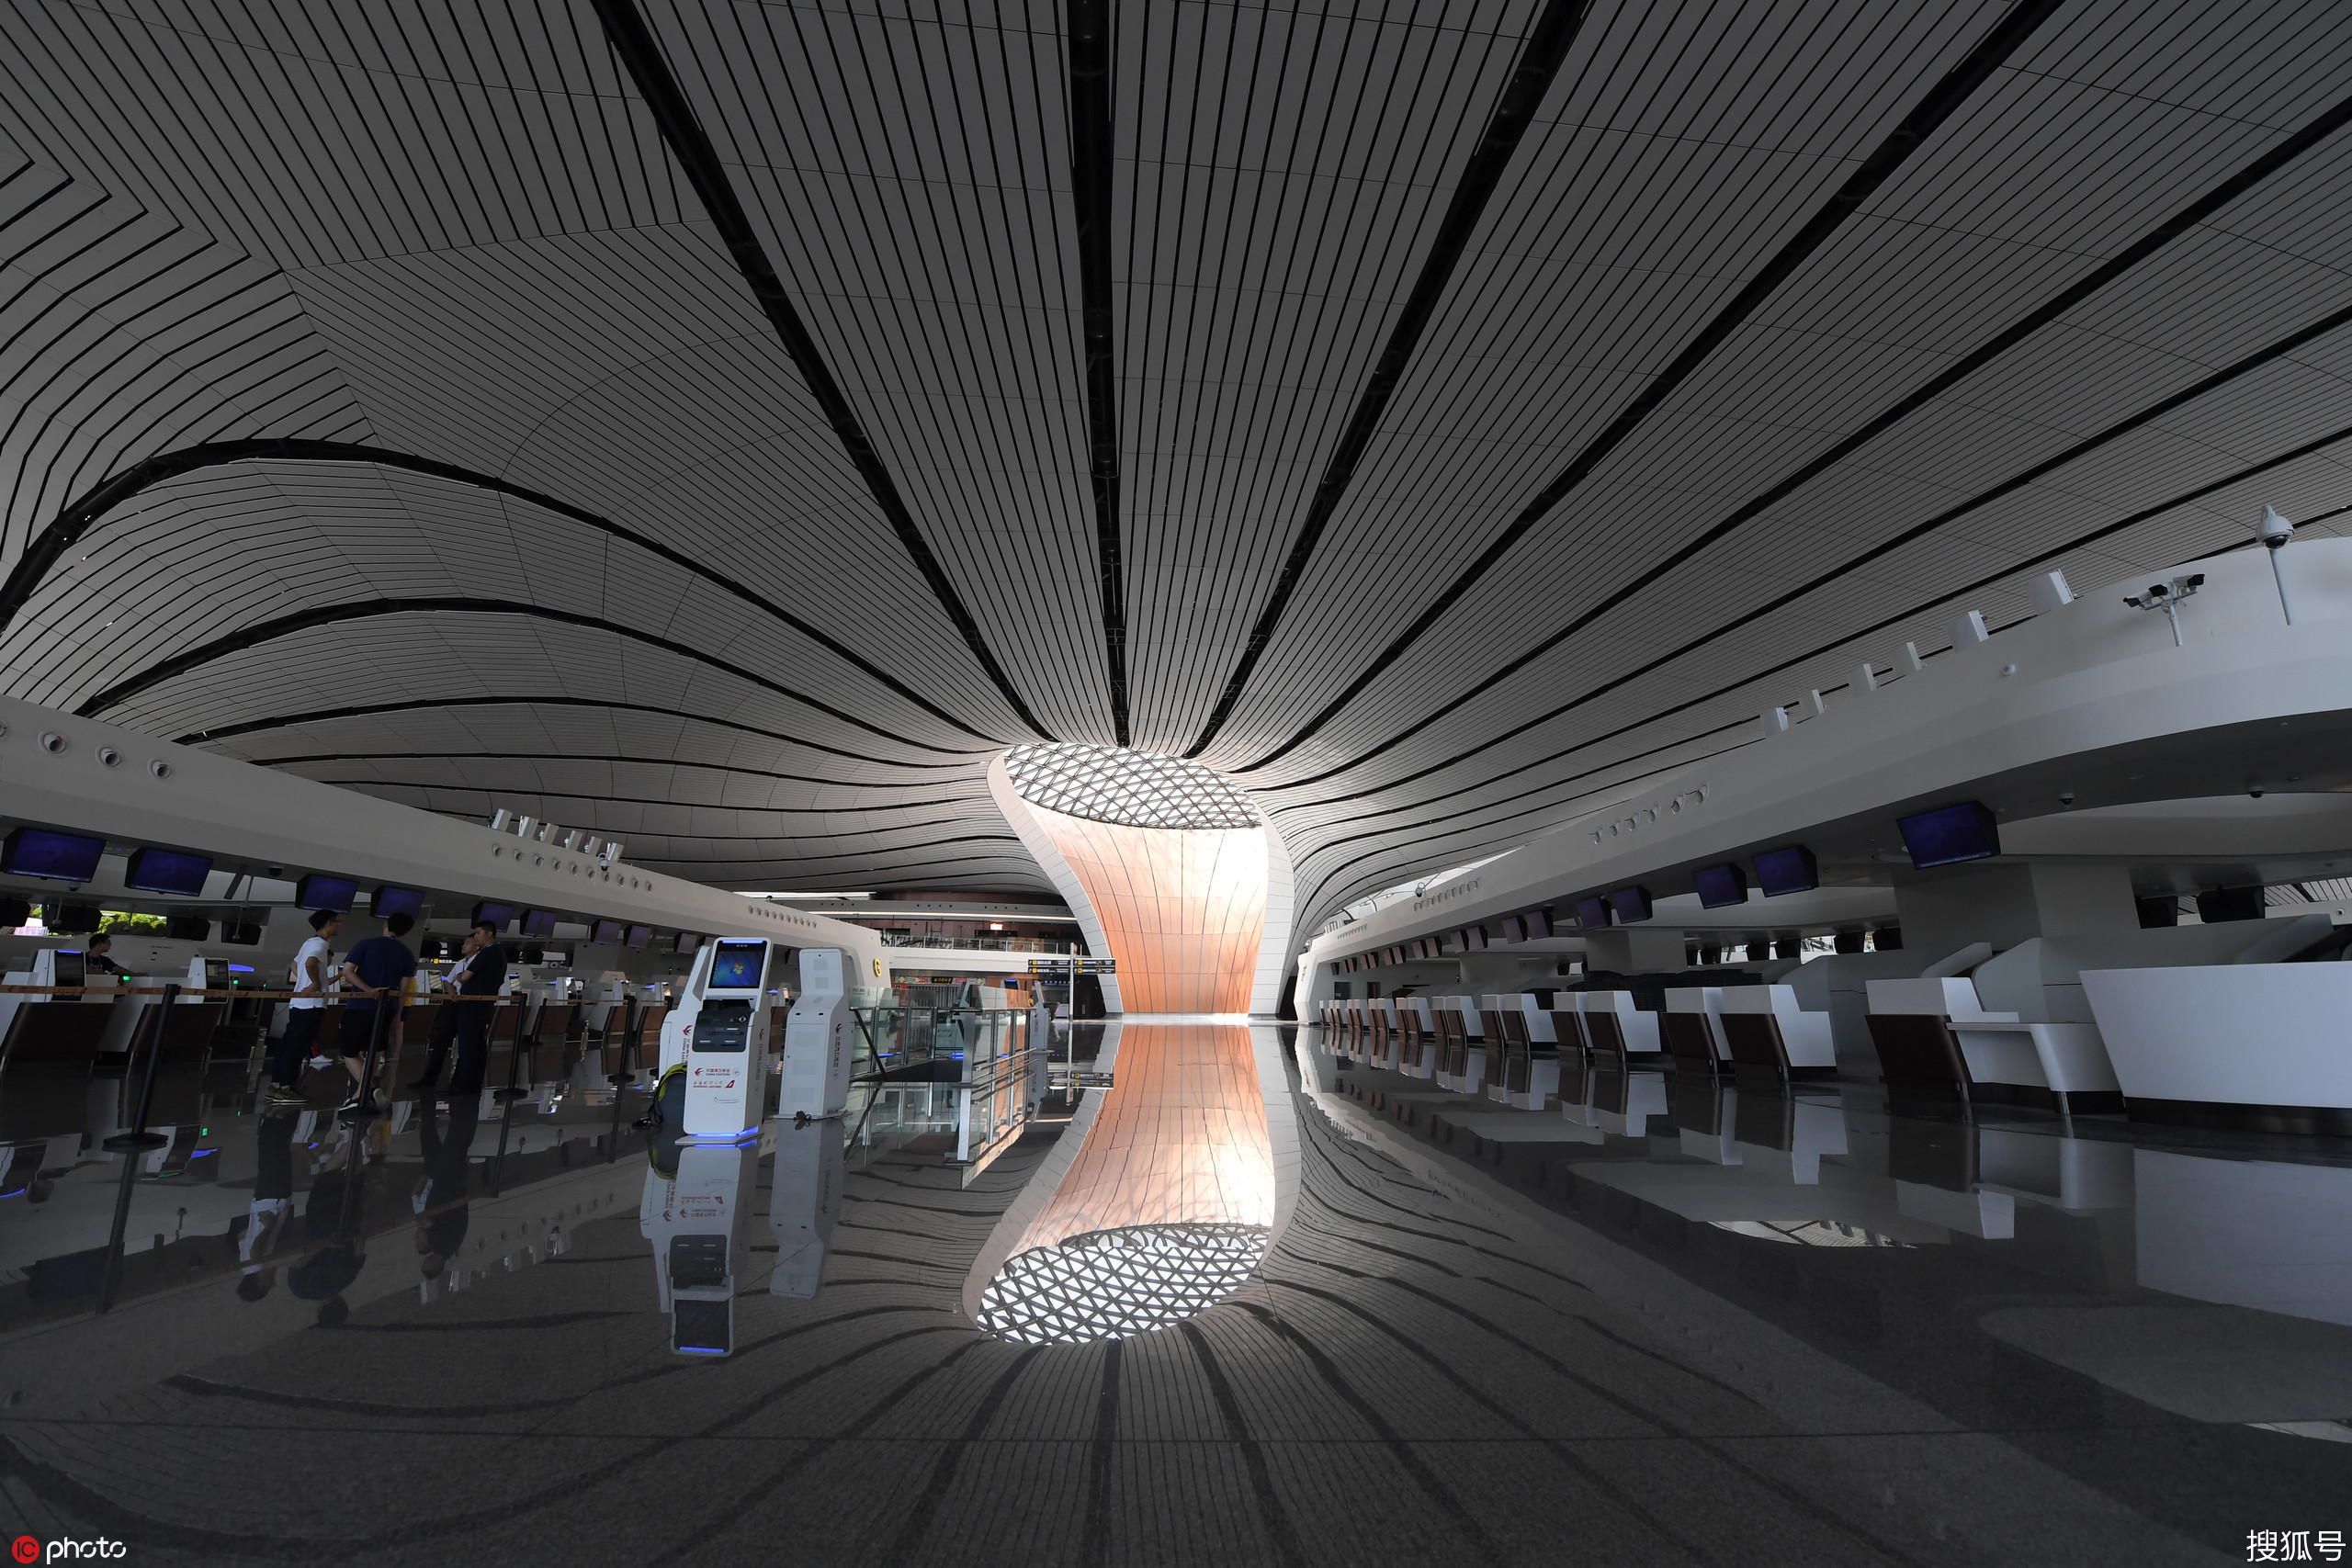 北京大兴国际机场室内大气磅礴空间连通性很强